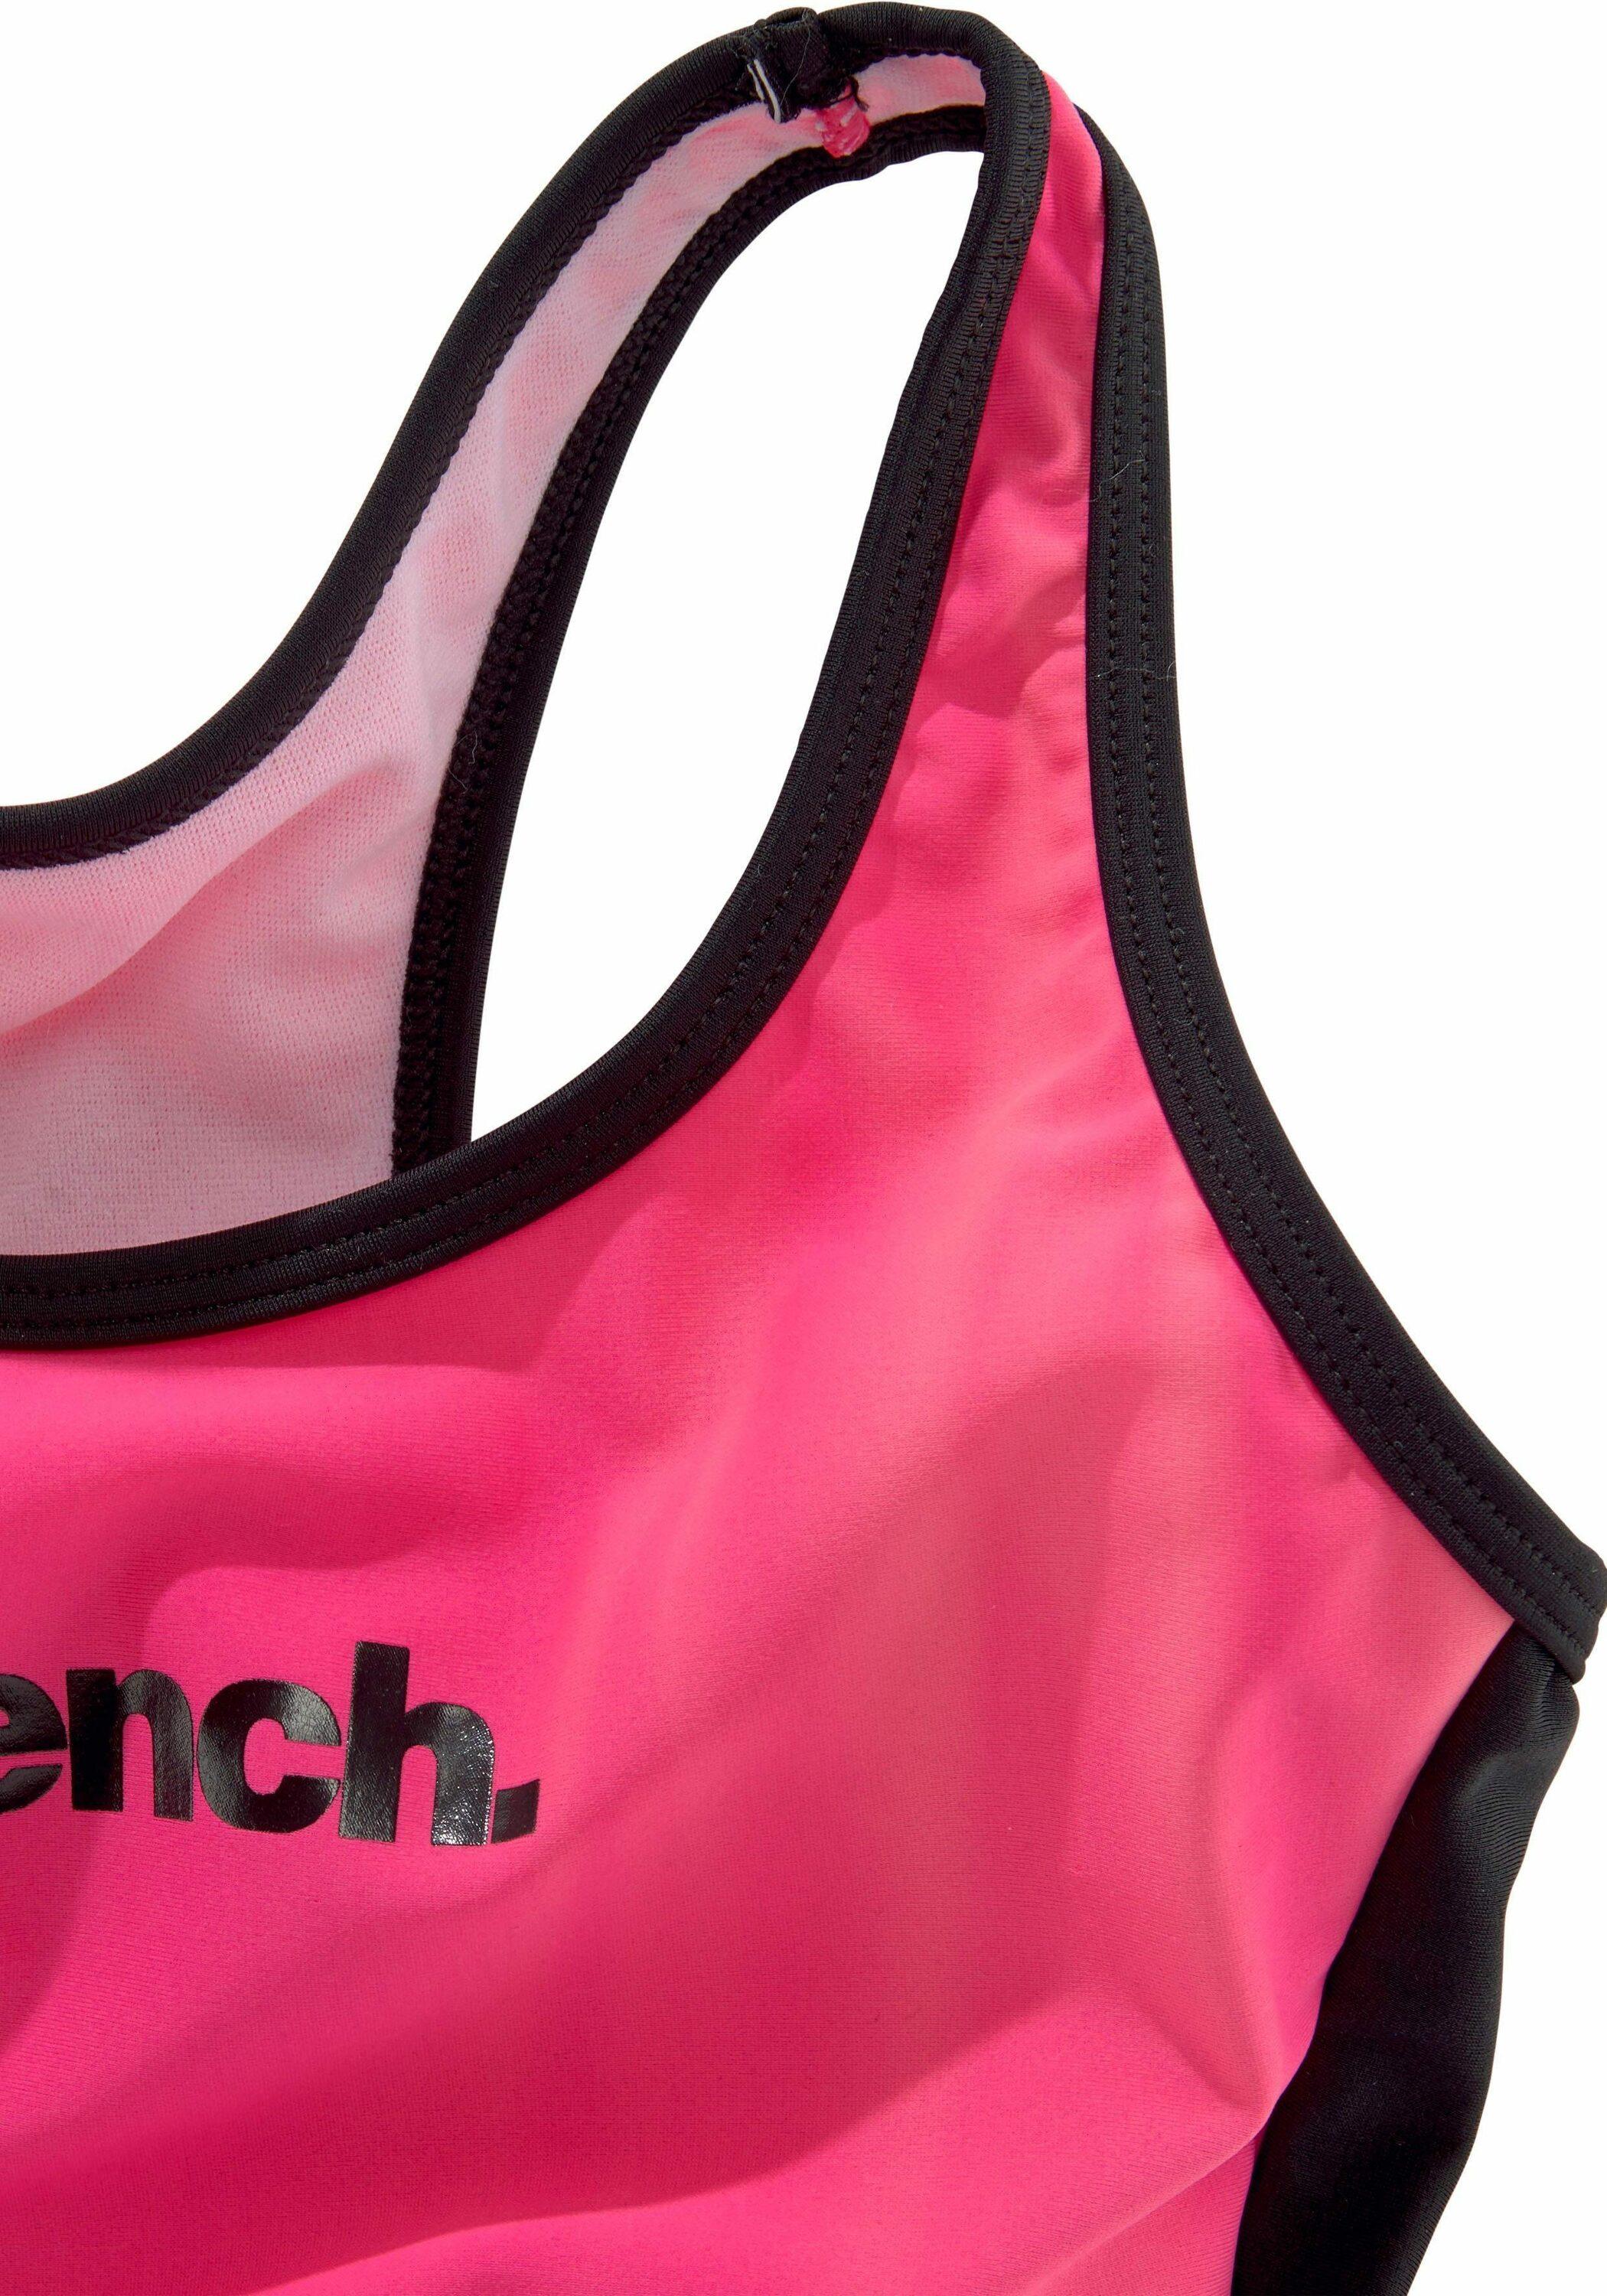 Bench Badeanzug Damen pink-schwarz Shop kaufen von Online SportScheck im